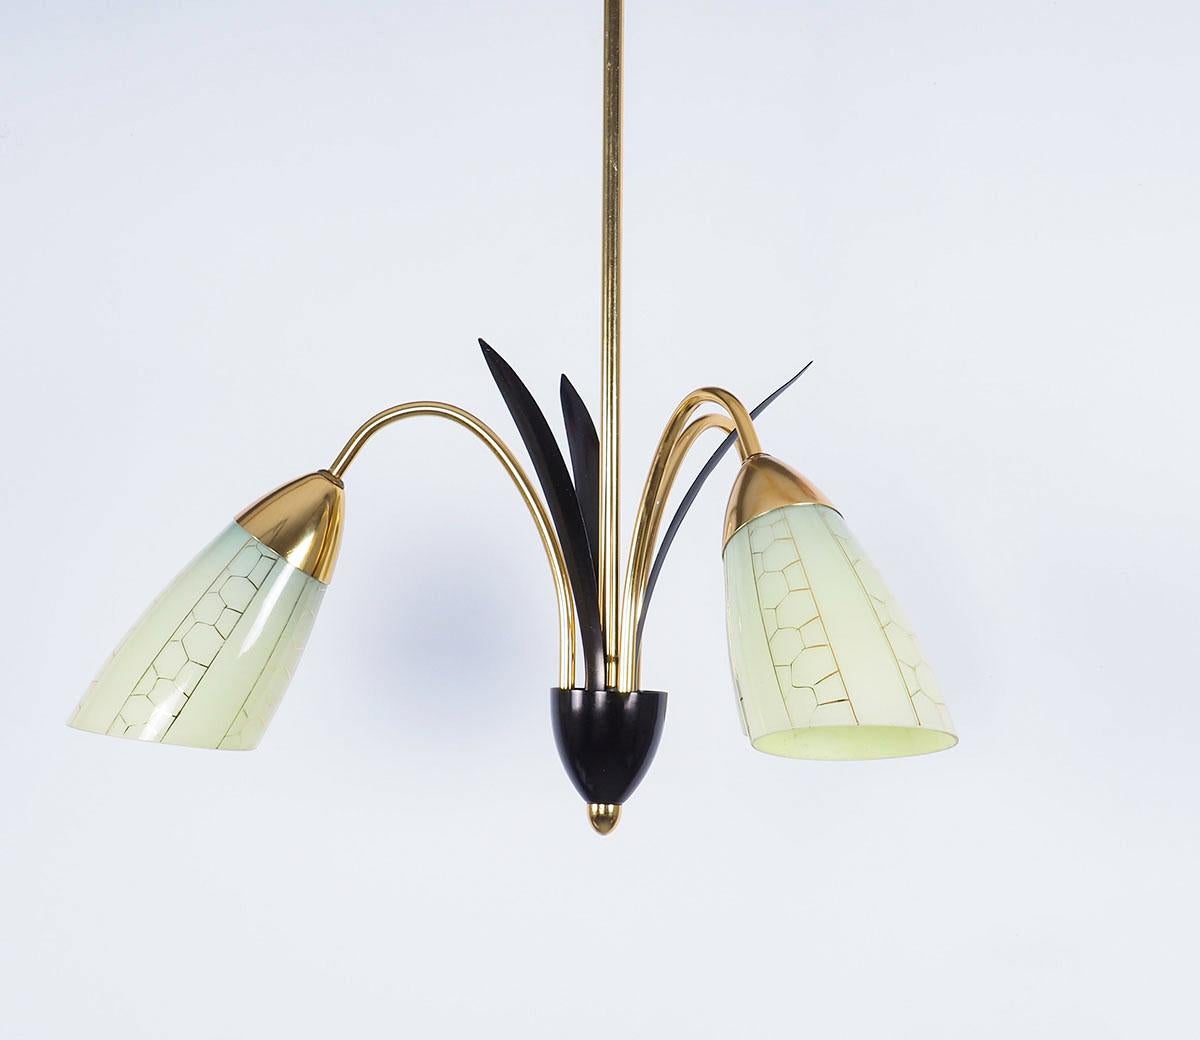 Kronleuchter aus Messing mit 3 grünen Glasschirmen aus den 1950er Jahren.

Die Lampe hat 3 Messingarme mit 3 schwarzen Metallblättern dazwischen.

Die opalartigen Schirme haben eine grünlich-gelbe Farbe mit einem feinen Wabendekor in Gold.

Sehr